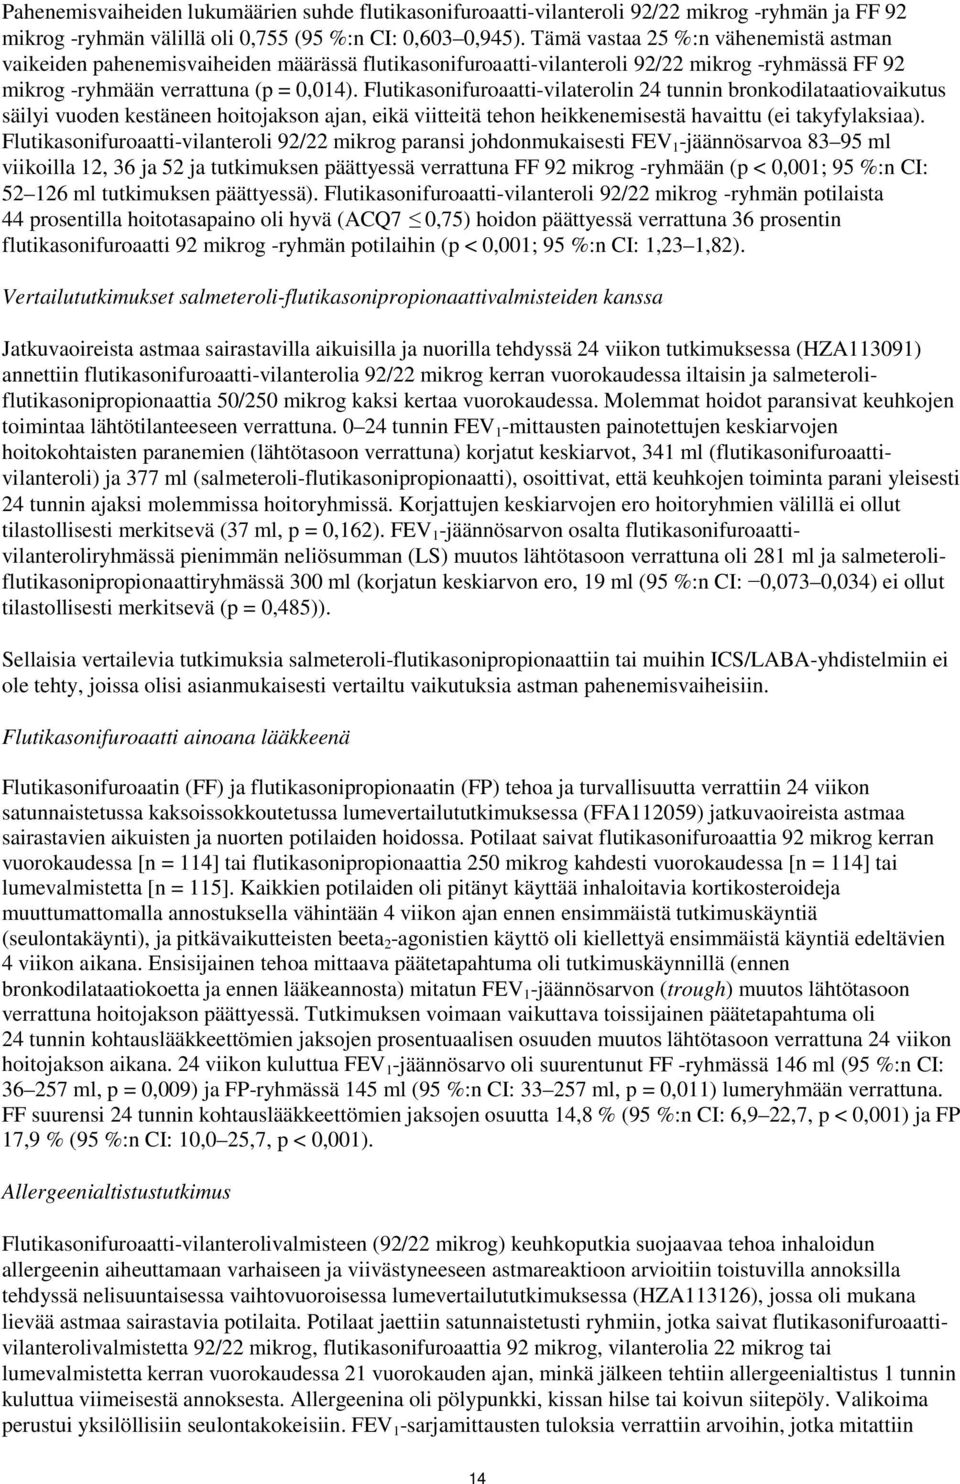 Flutikasonifuroaatti-vilaterolin 24 tunnin bronkodilataatiovaikutus säilyi vuoden kestäneen hoitojakson ajan, eikä viitteitä tehon heikkenemisestä havaittu (ei takyfylaksiaa).